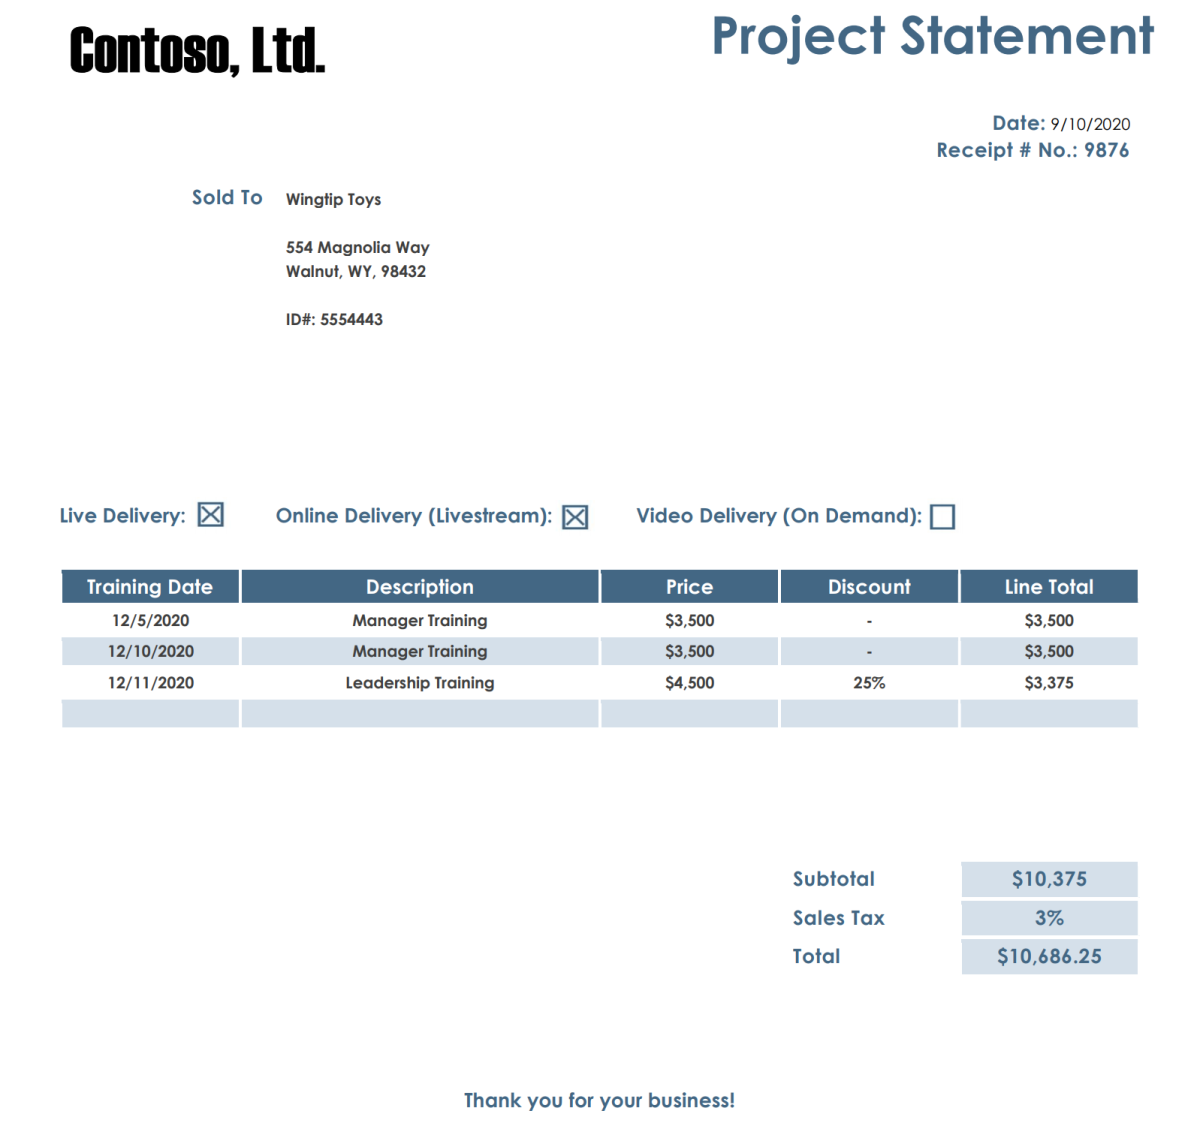 Contoso-Projektangabedokument mit einer Tabelle